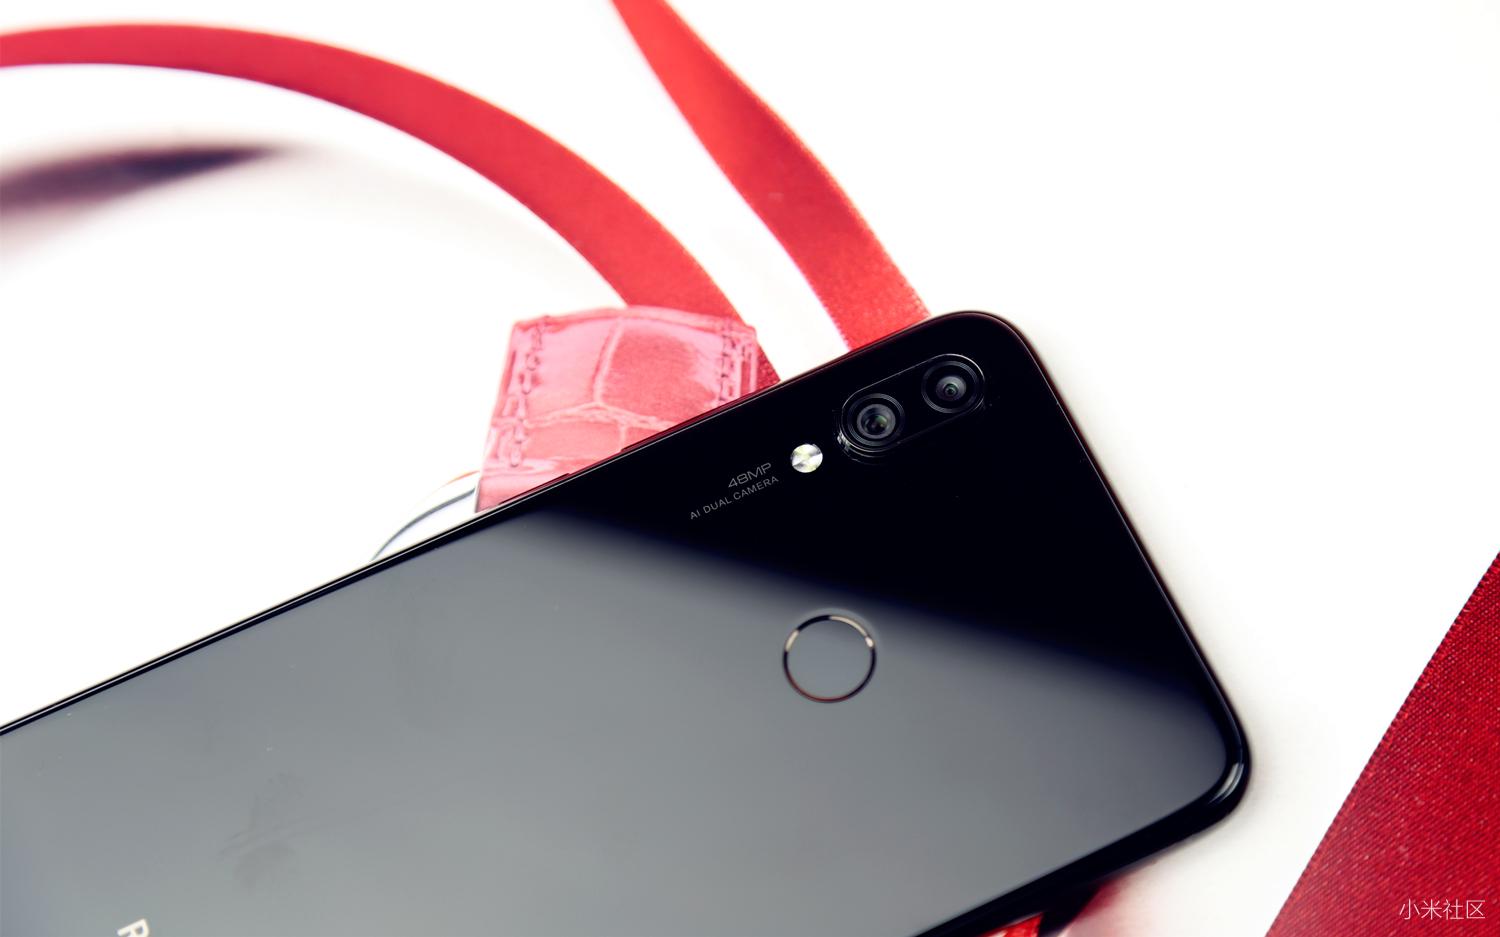 Redmi Note 7 Pro开箱：真品质良心价，千元机拍照神器！